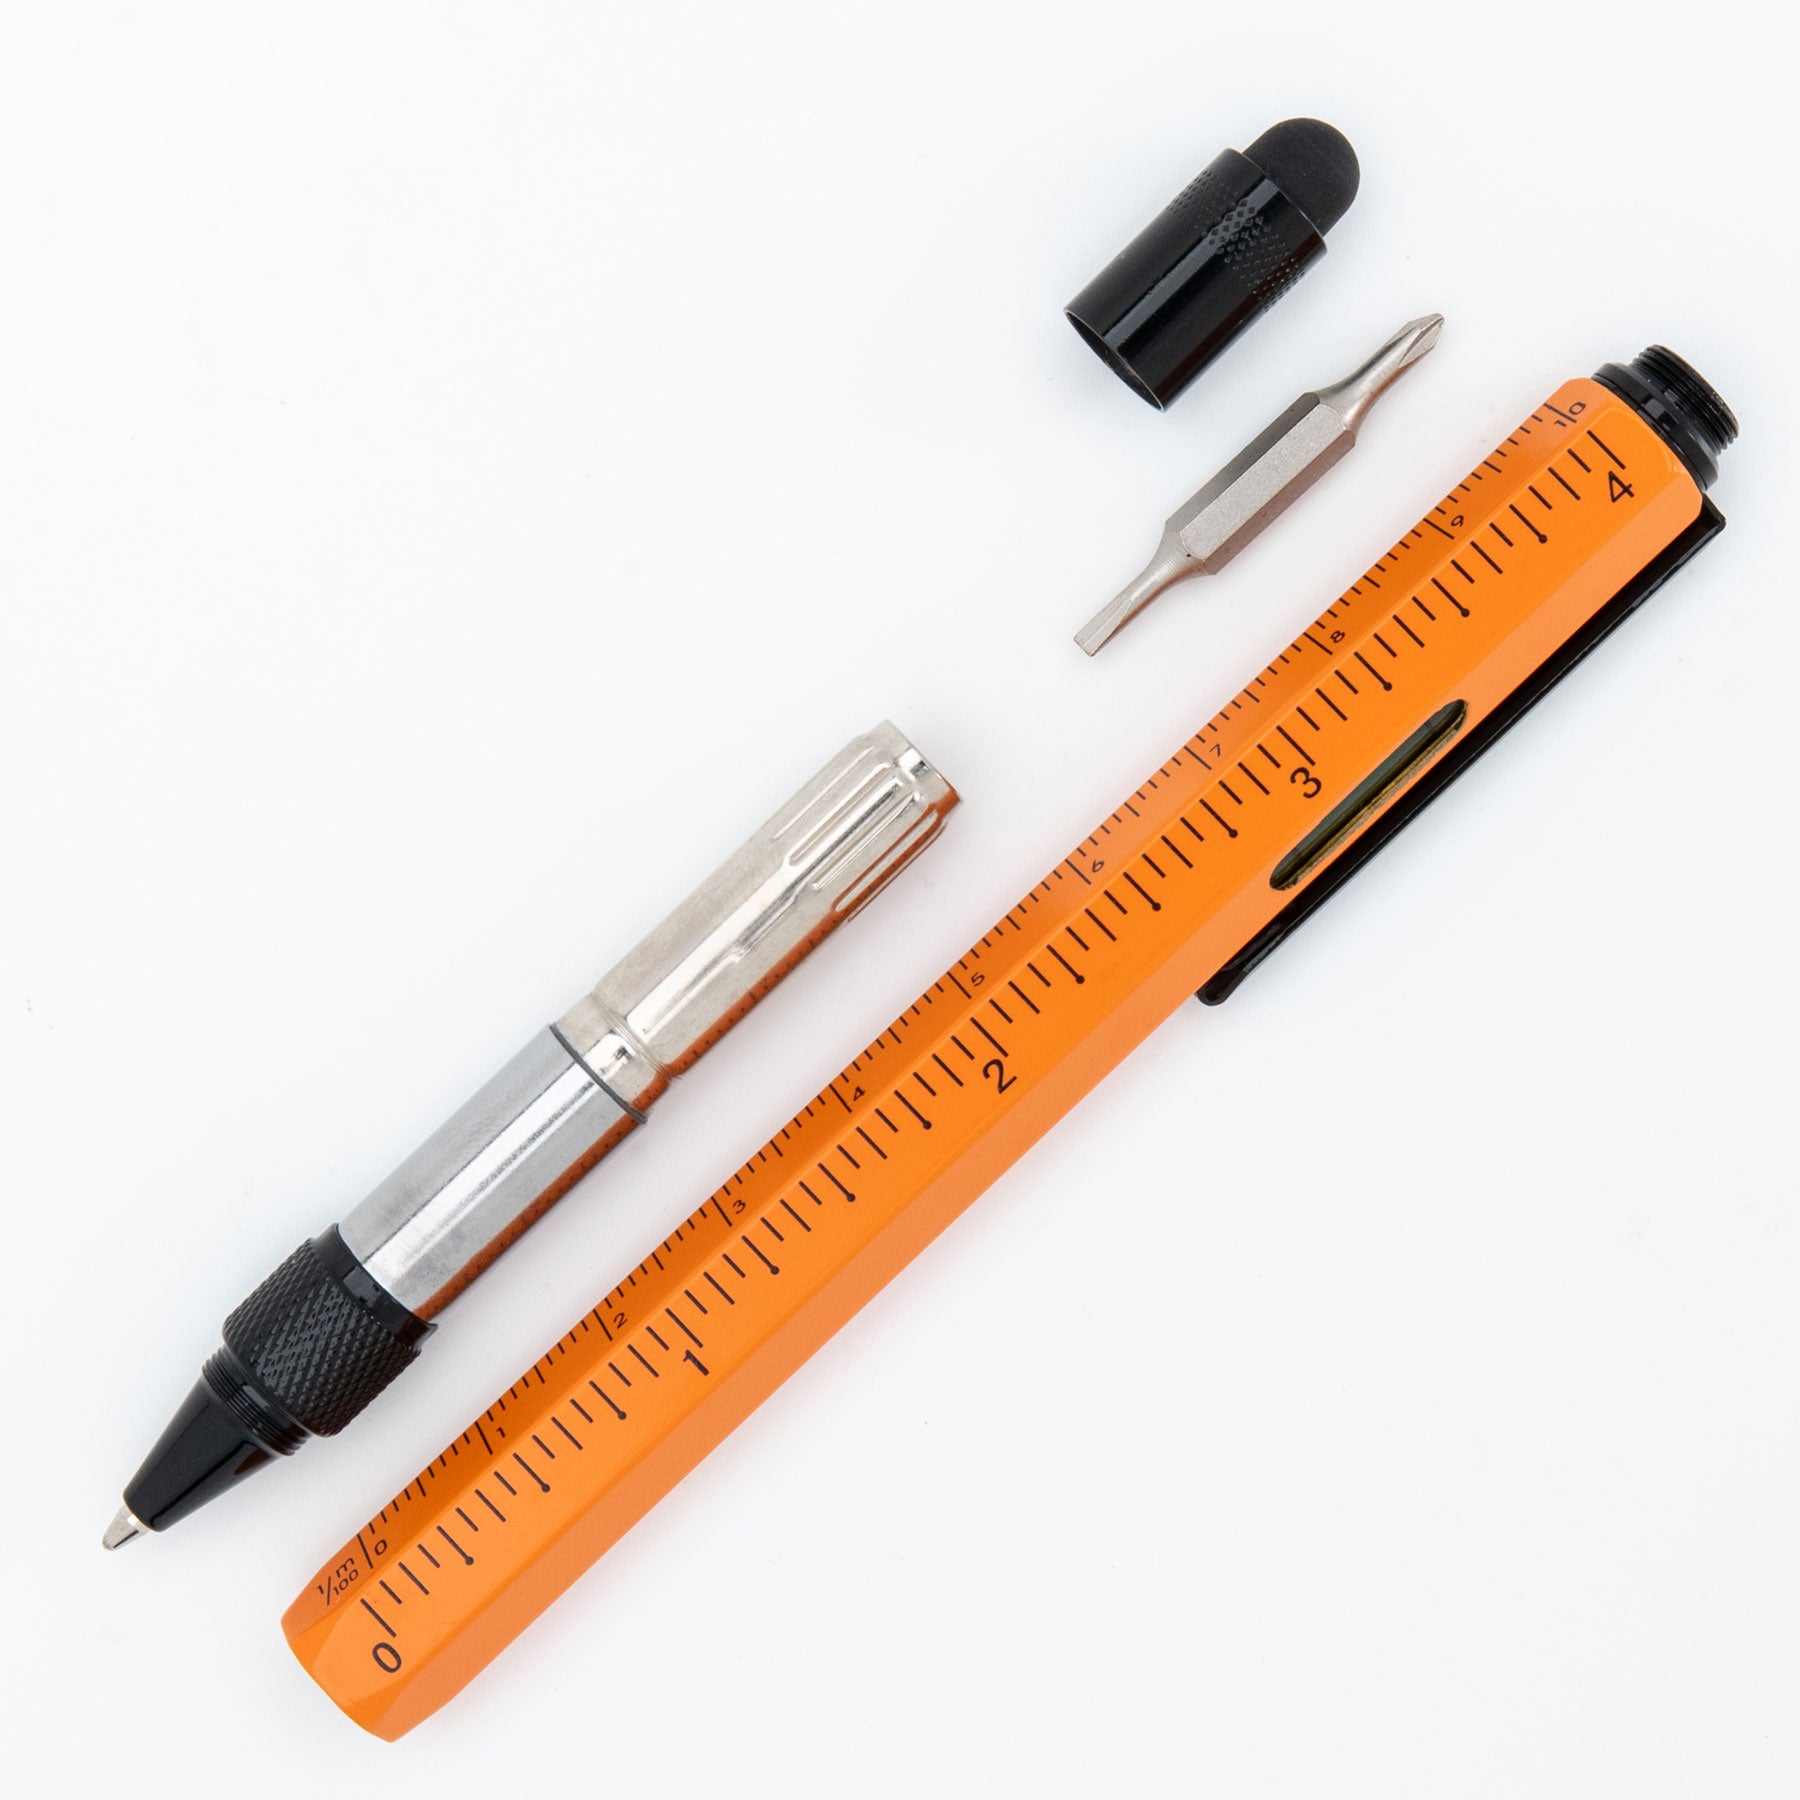 Monteverde Tool Pen Stylus Ballpoint Pen Copper